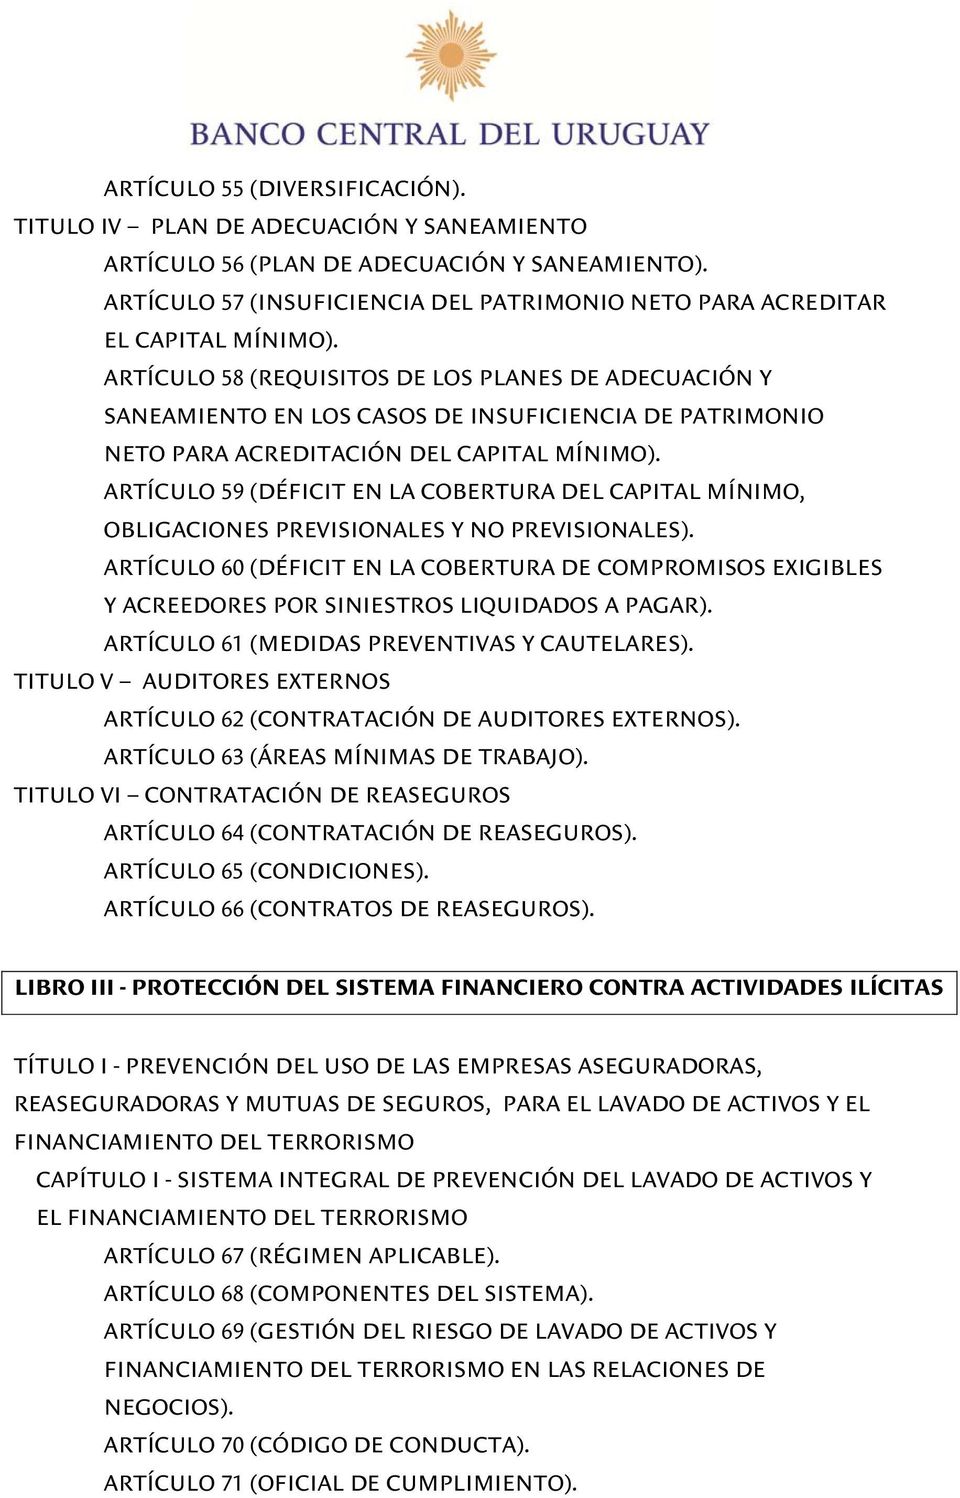 ARTÍCULO 58 (REQUISITOS DE LOS PLANES DE ADECUACIÓN Y SANEAMIENTO EN LOS CASOS DE INSUFICIENCIA DE PATRIMONIO NETO PARA ACREDITACIÓN DEL CAPITAL MÍNIMO).